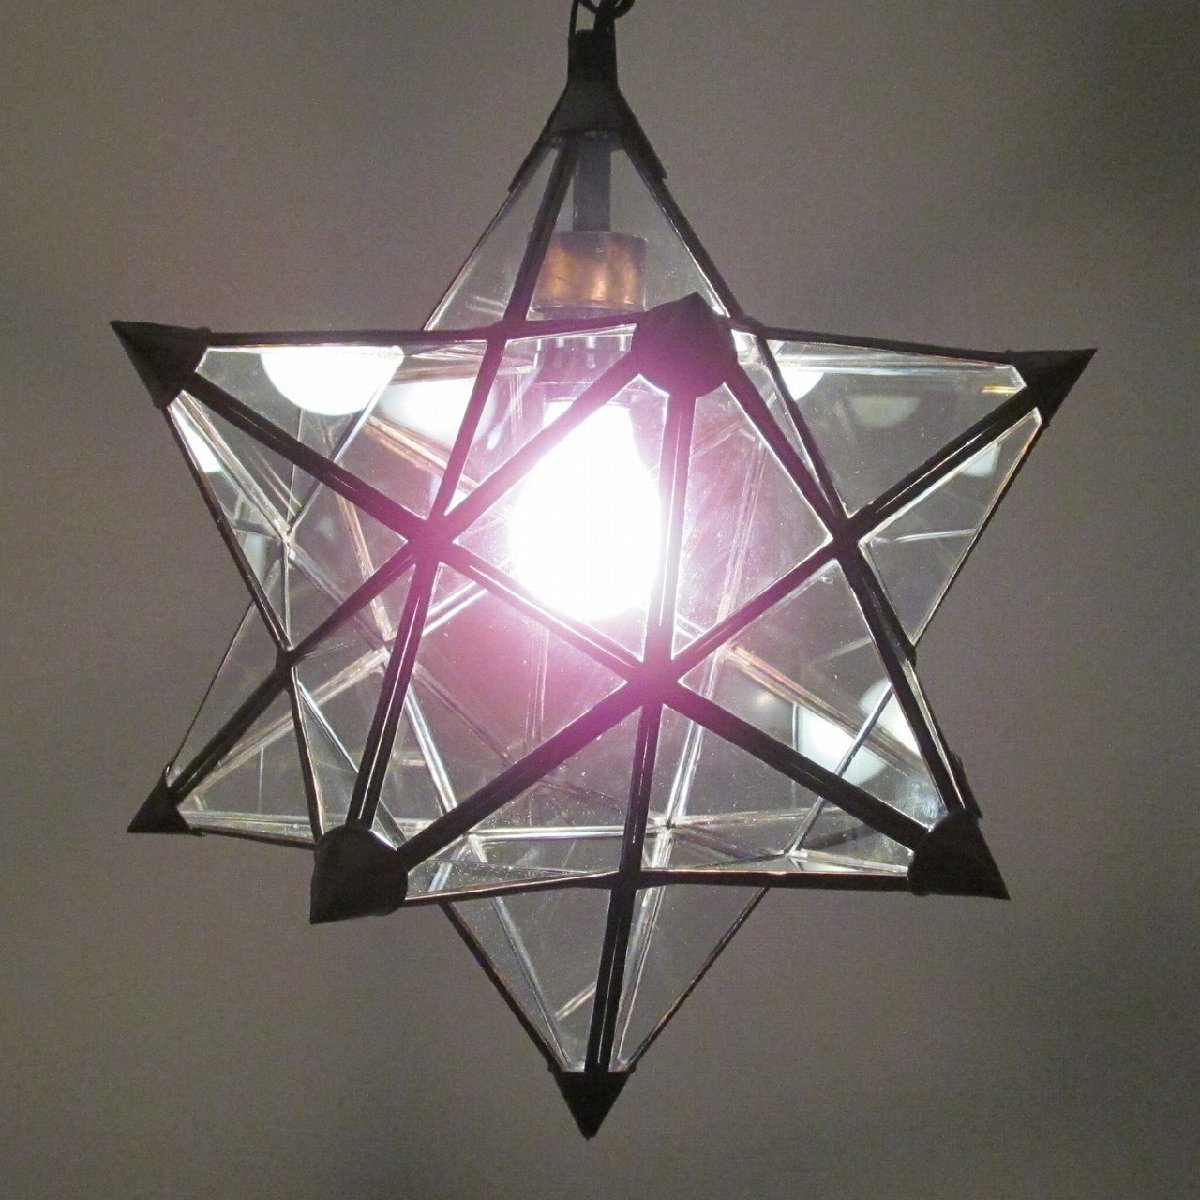 スターランプ ガラスペンダントランプ 星形 星型ランプ クリア ライト 天井照明 アメリカン 50'S 60'S YSA-110739_画像4